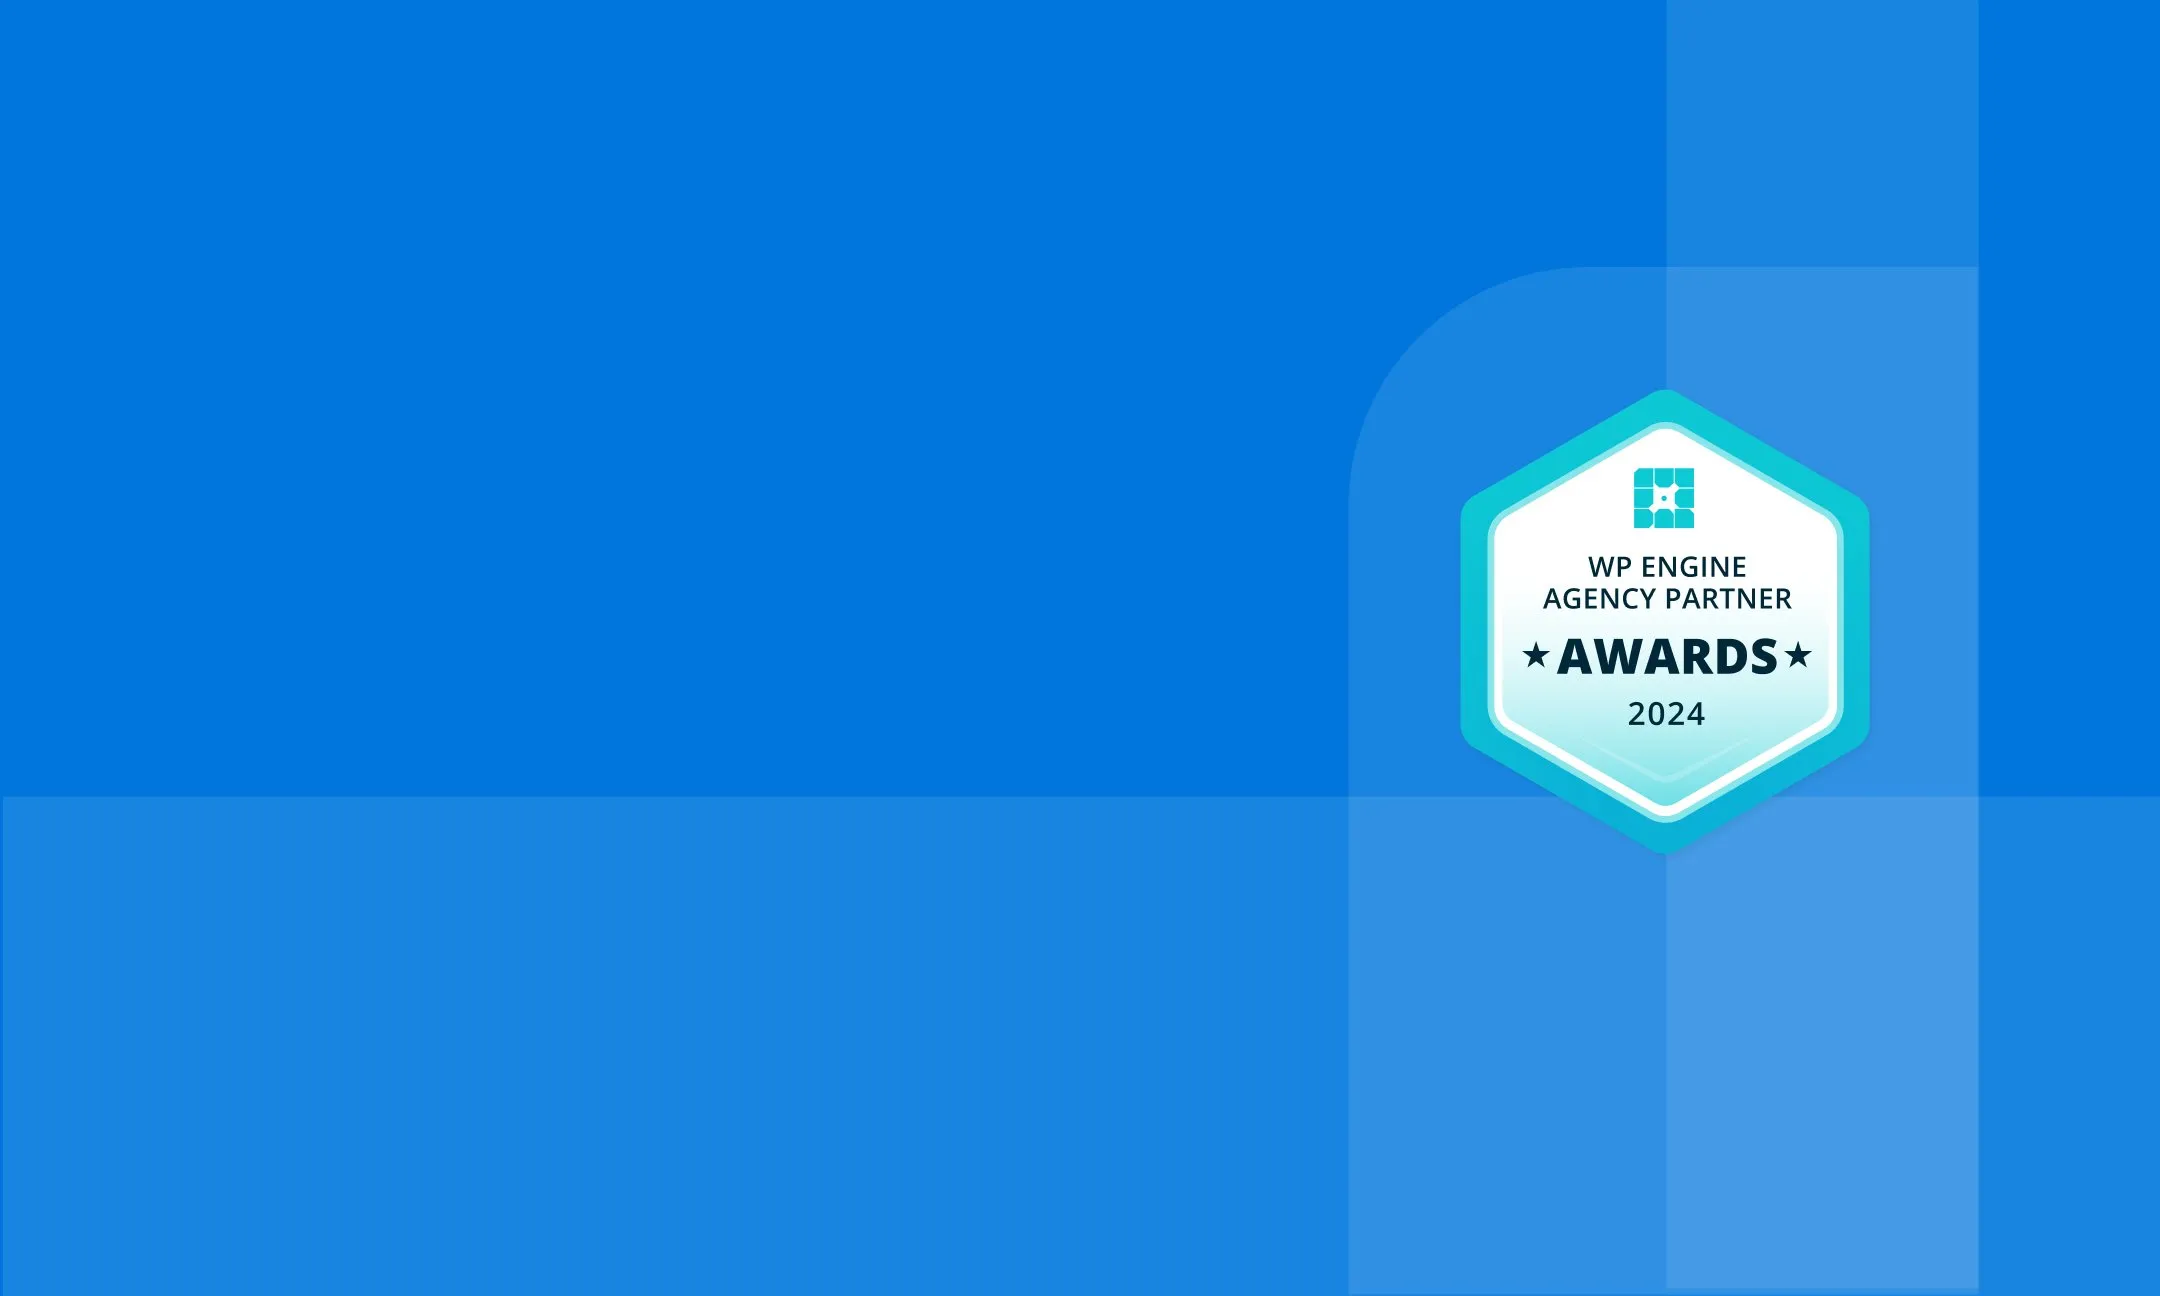 background image with agency partner award logo